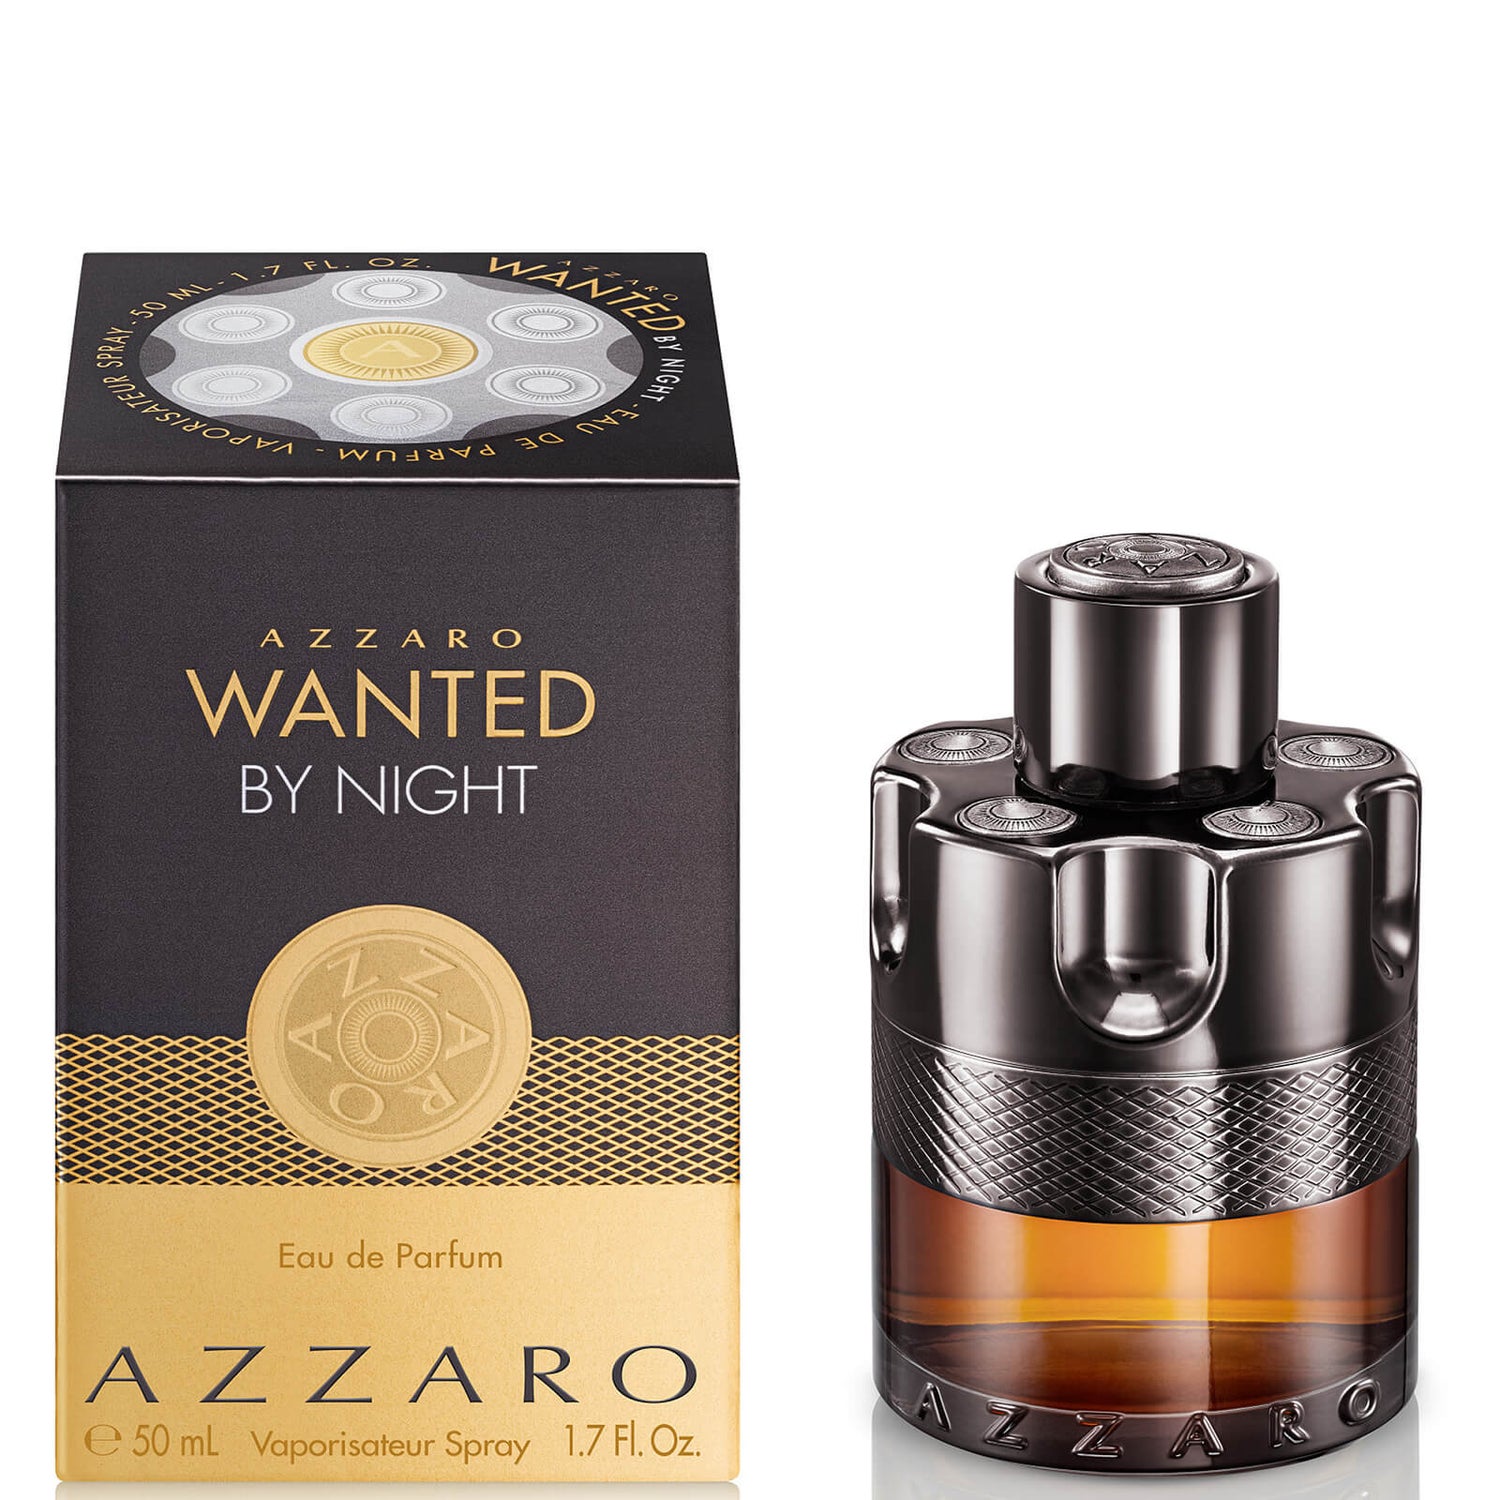 Azzaro Wanted By Night Eau de Parfum - 50ml